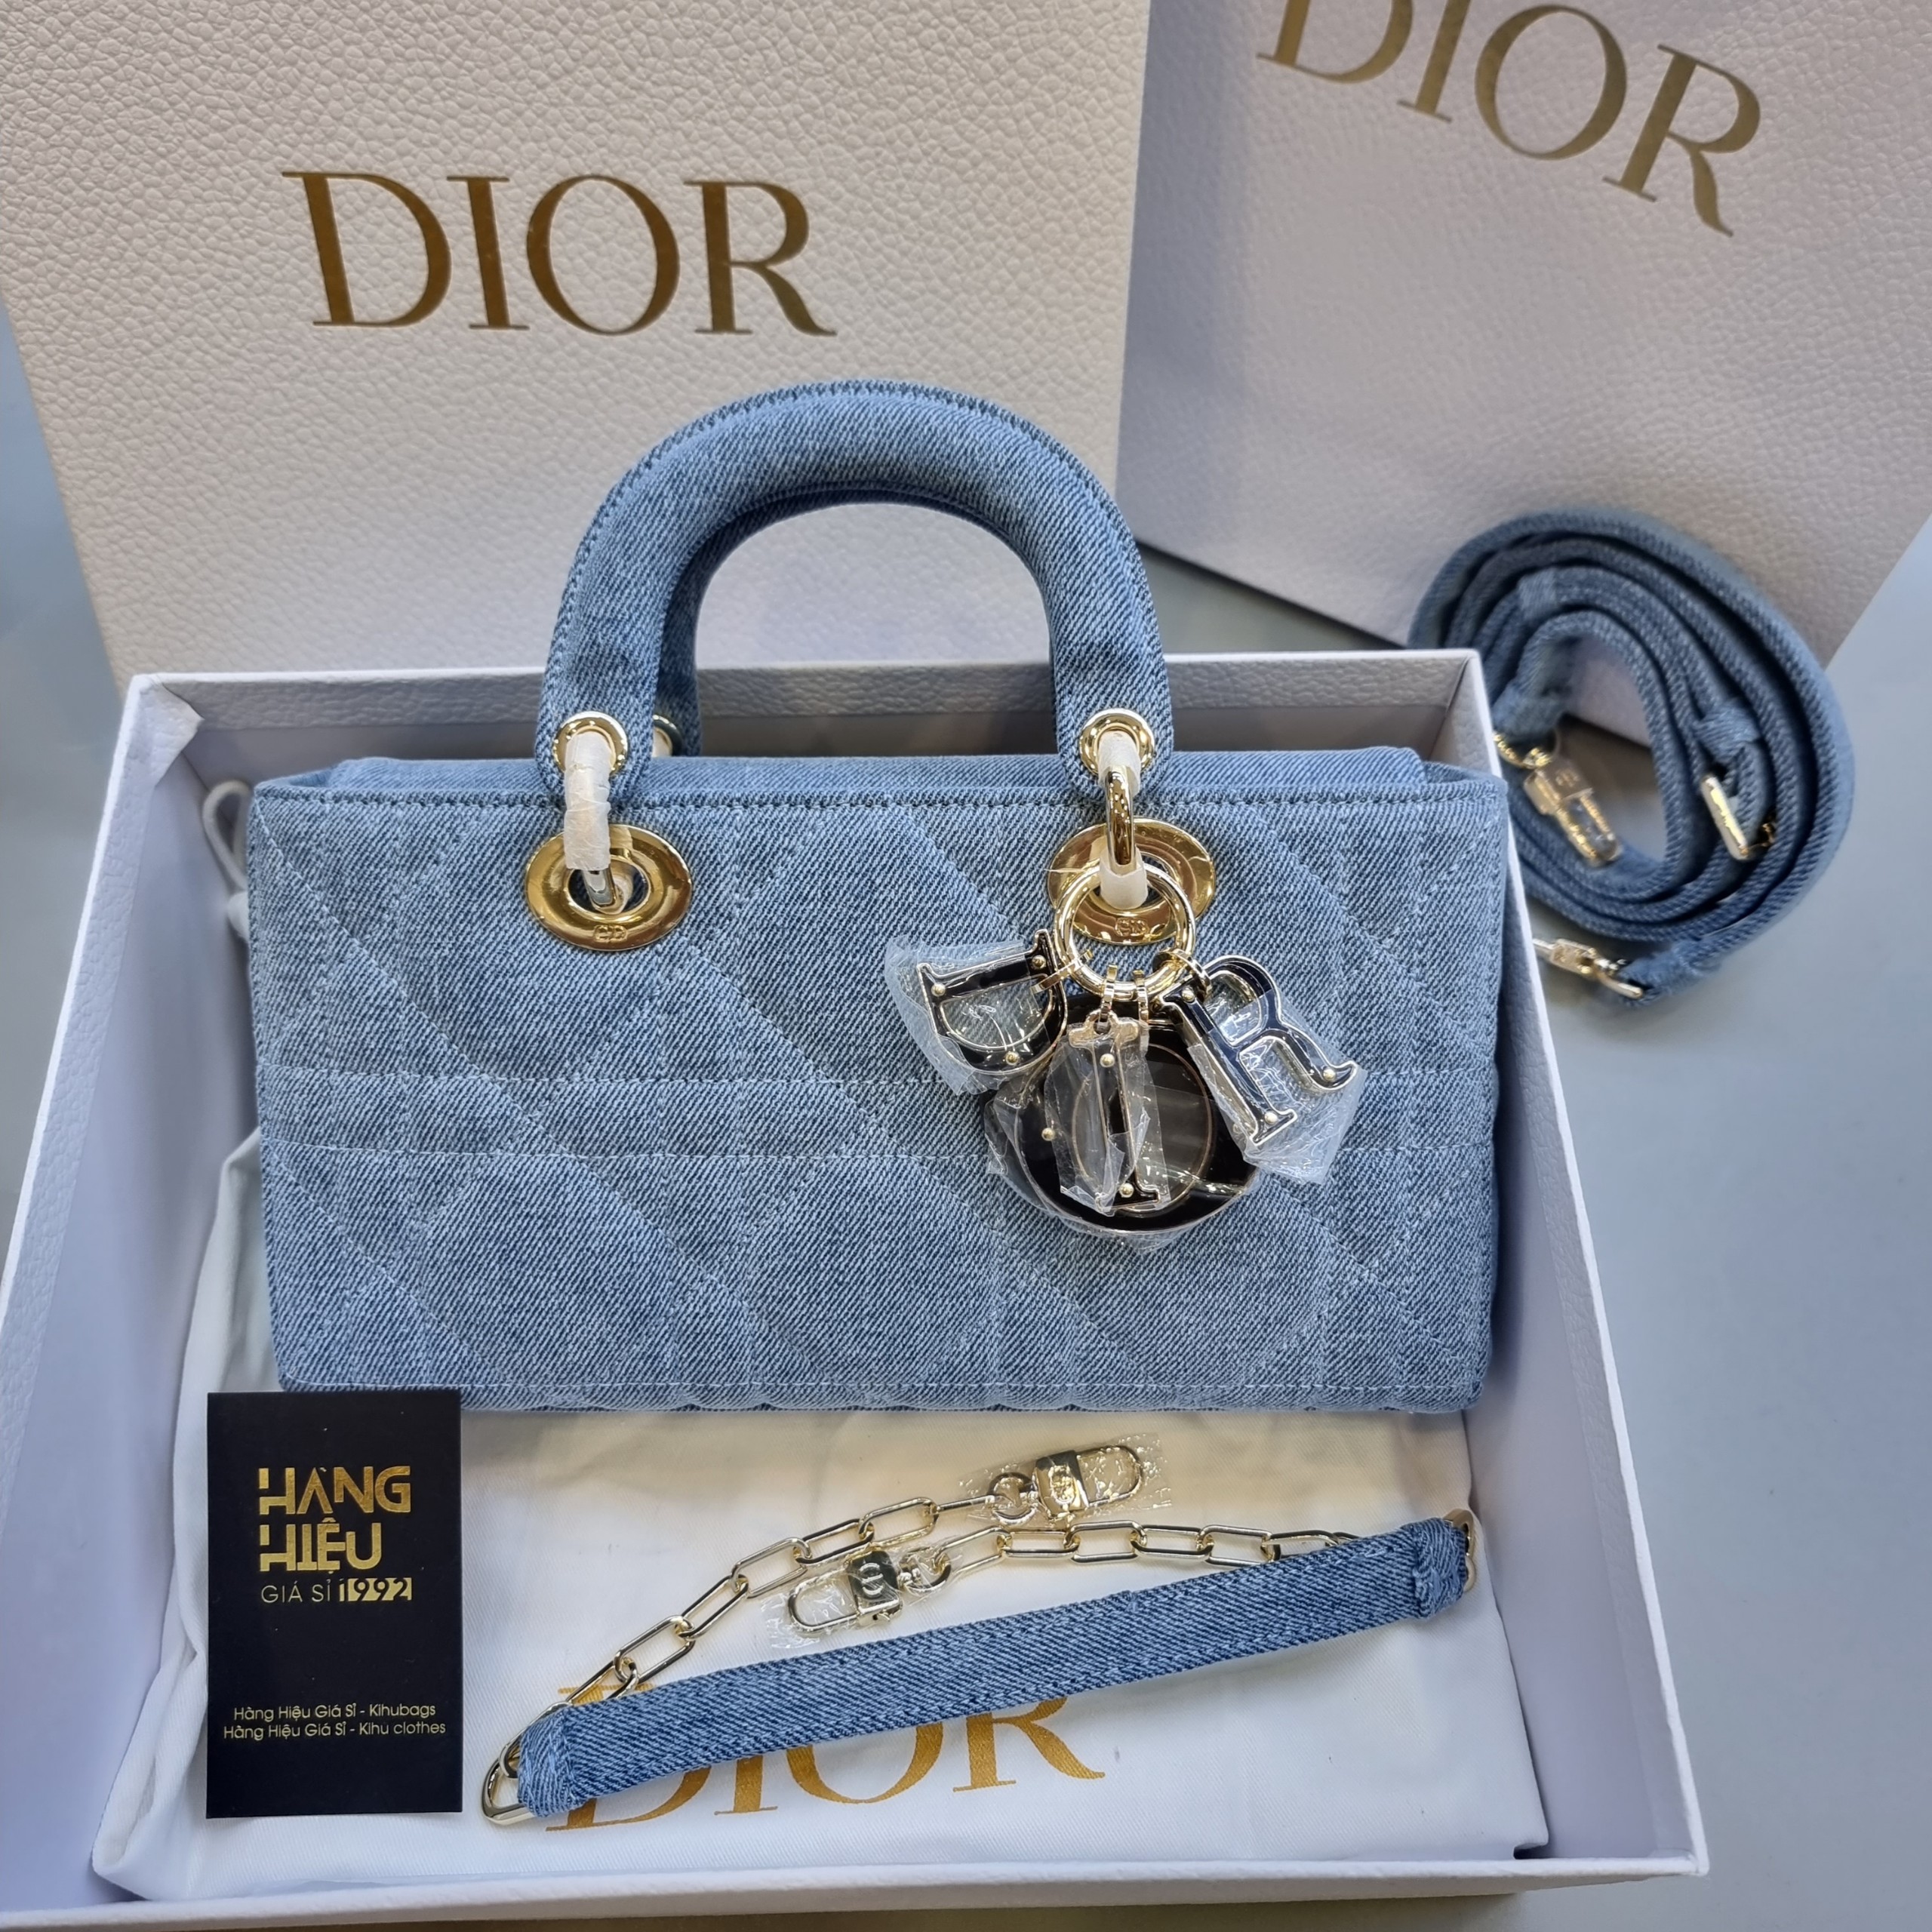 ORDER Dior LADY DJOY BAG